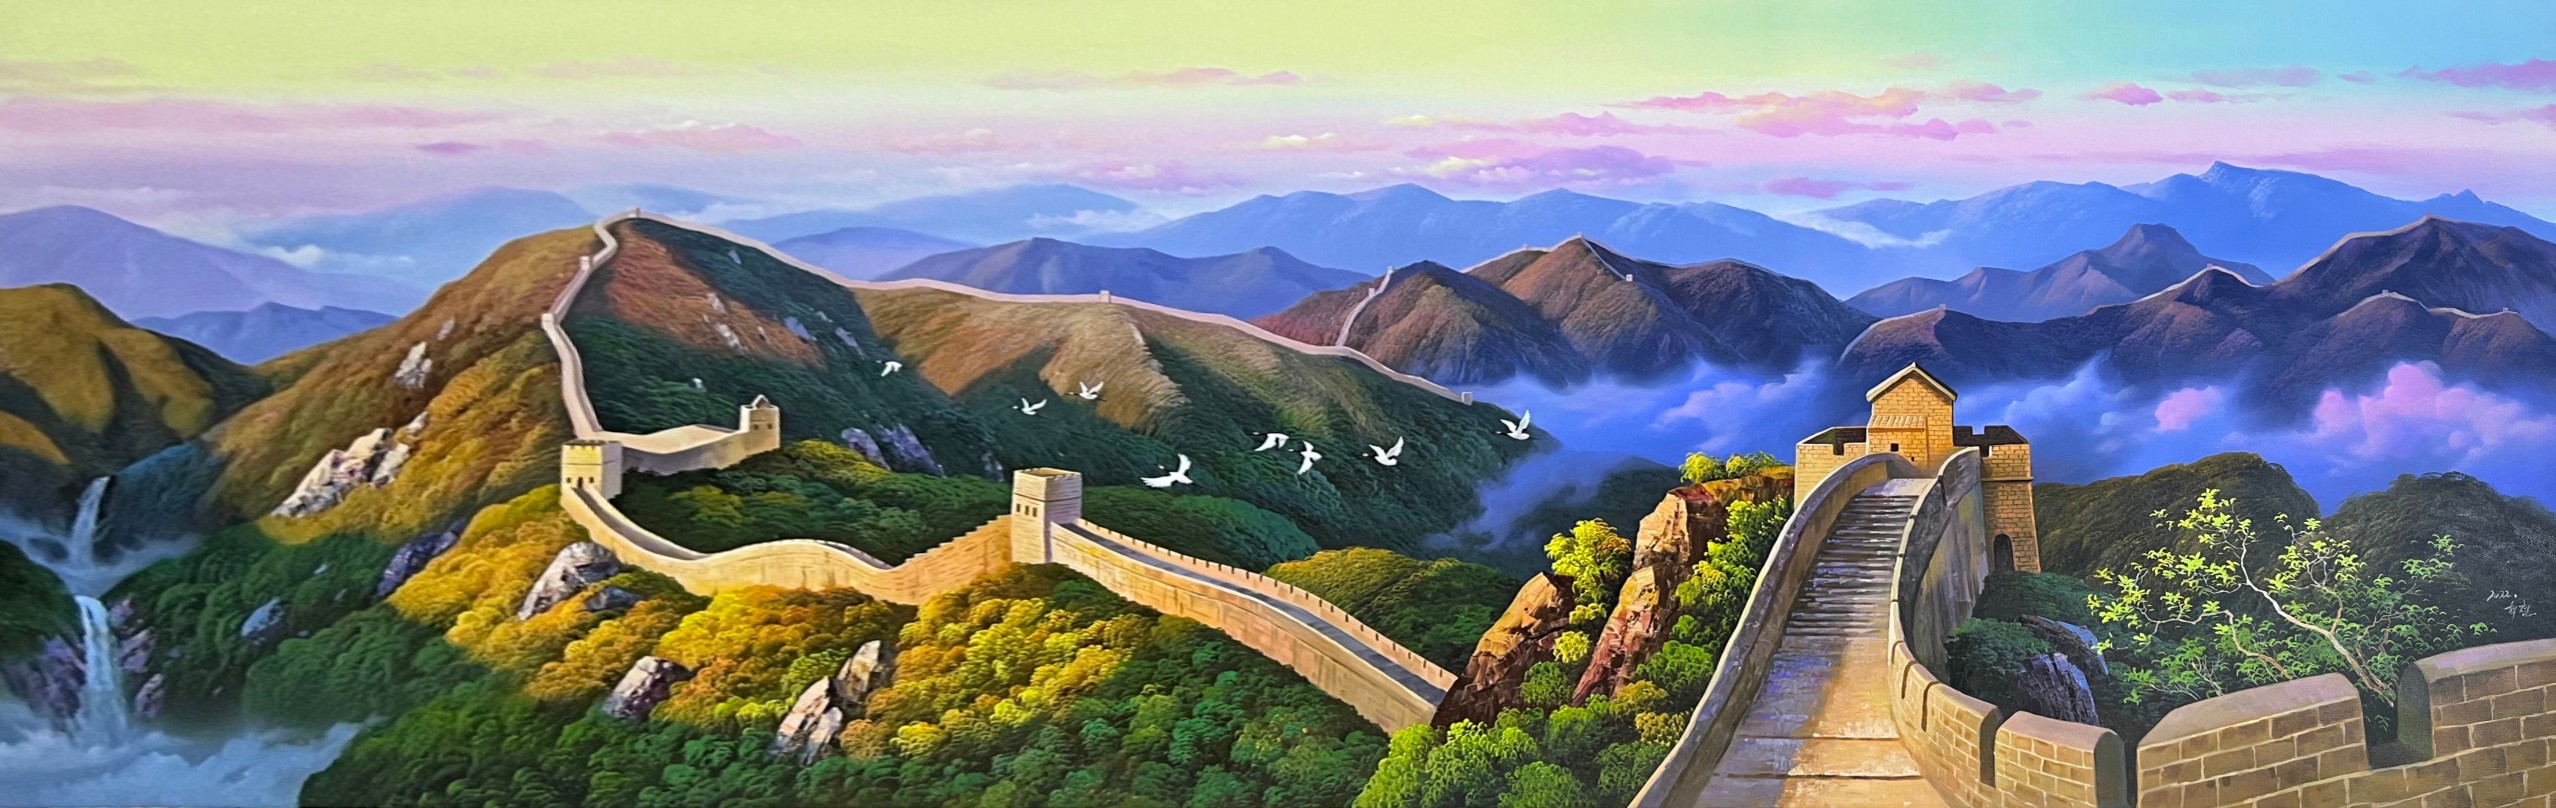 朝鲜唯美风景油画图片